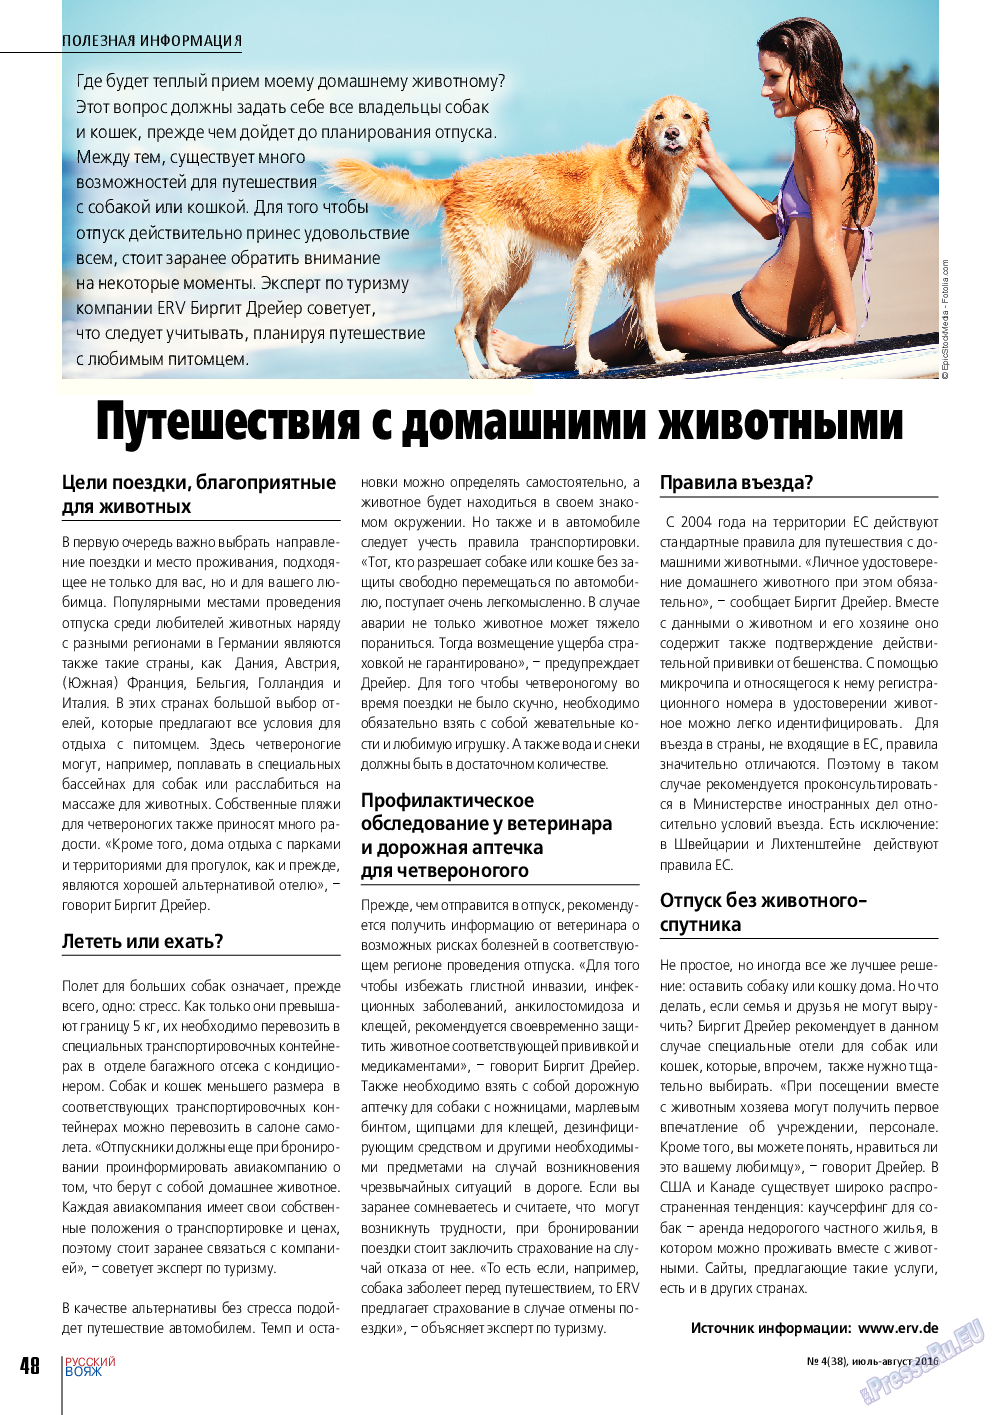 Русский вояж, журнал. 2016 №4 стр.48